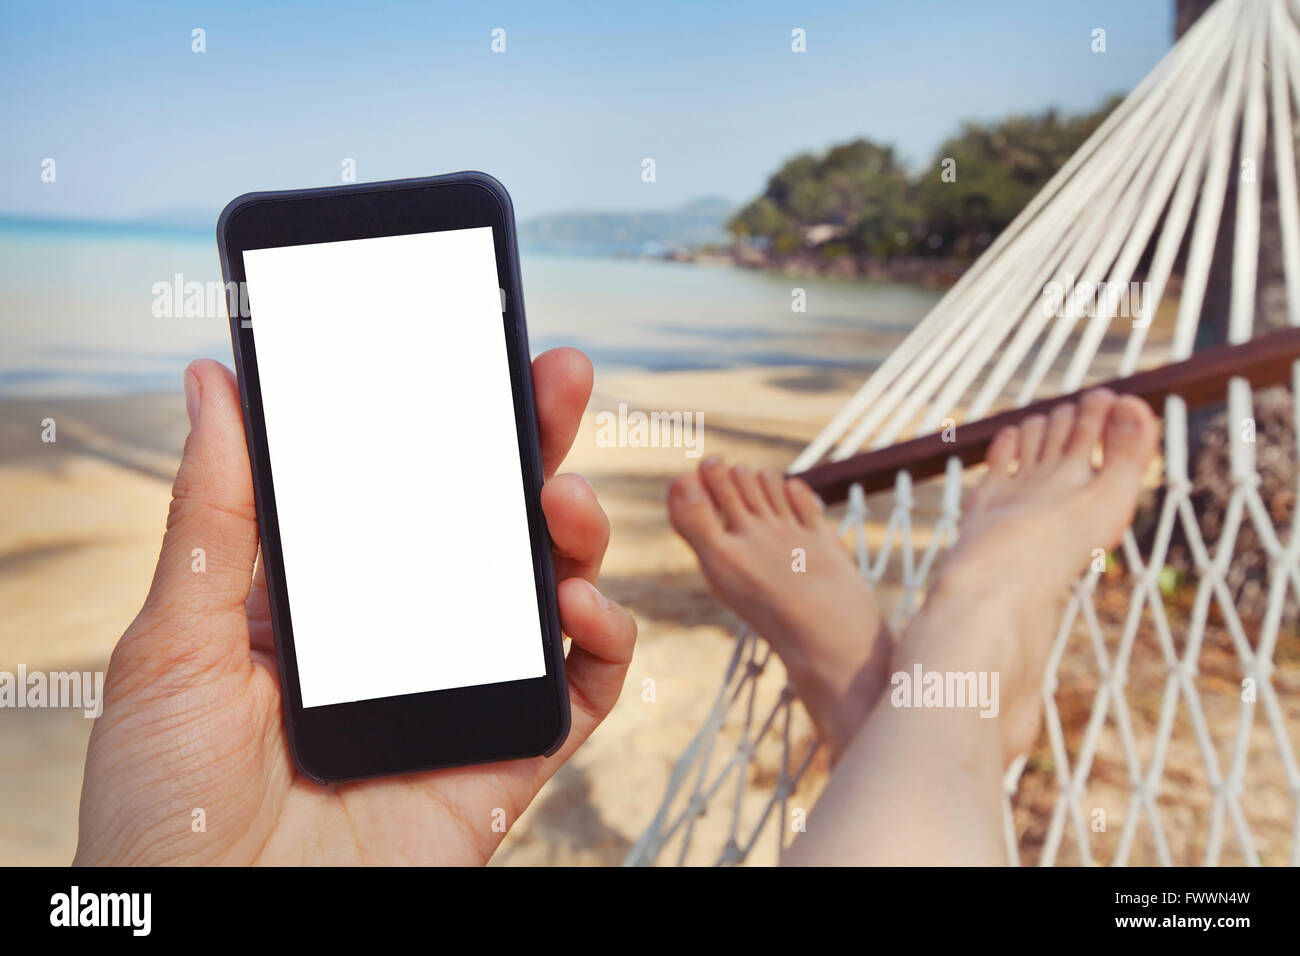 Applicazione mobile per viaggi, mano azienda smart phone con schermo bianco sulla spiaggia Foto Stock